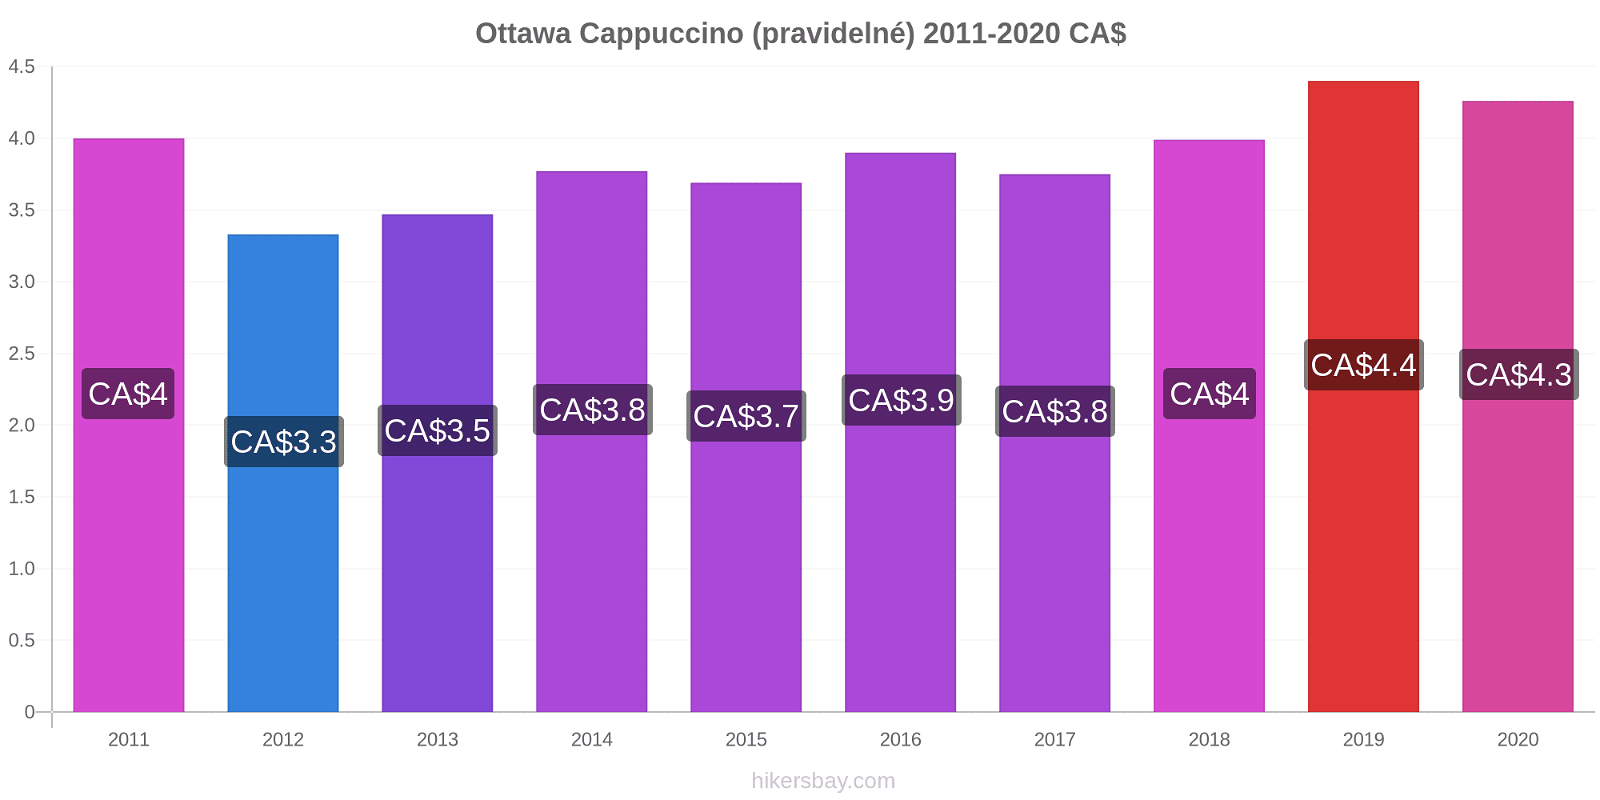 Ottawa změny cen Cappuccino (pravidelné) hikersbay.com